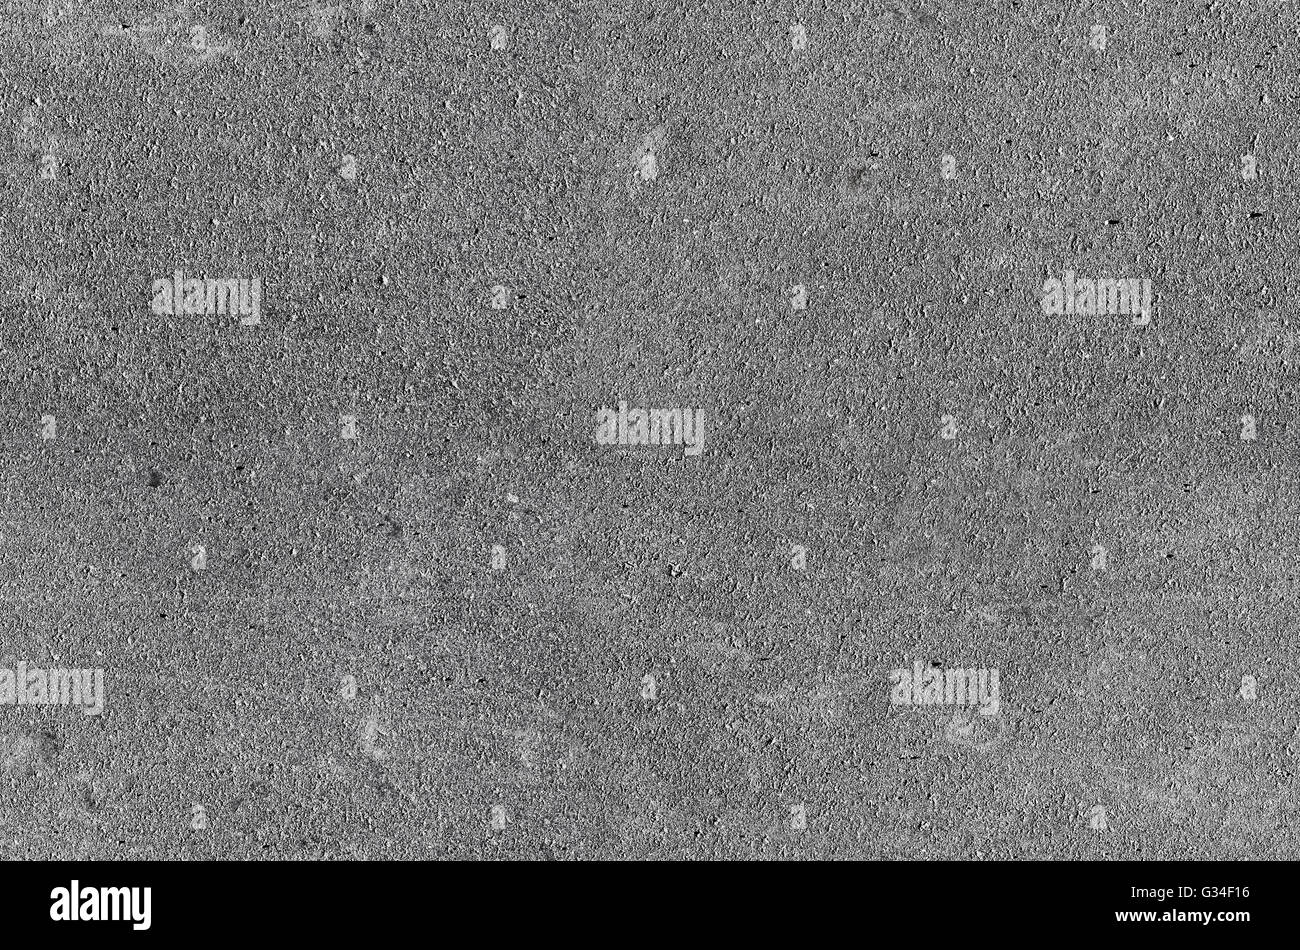 Seamless texture di sfondo del nuovo asfalto grigio pavimentazione stradale Foto Stock